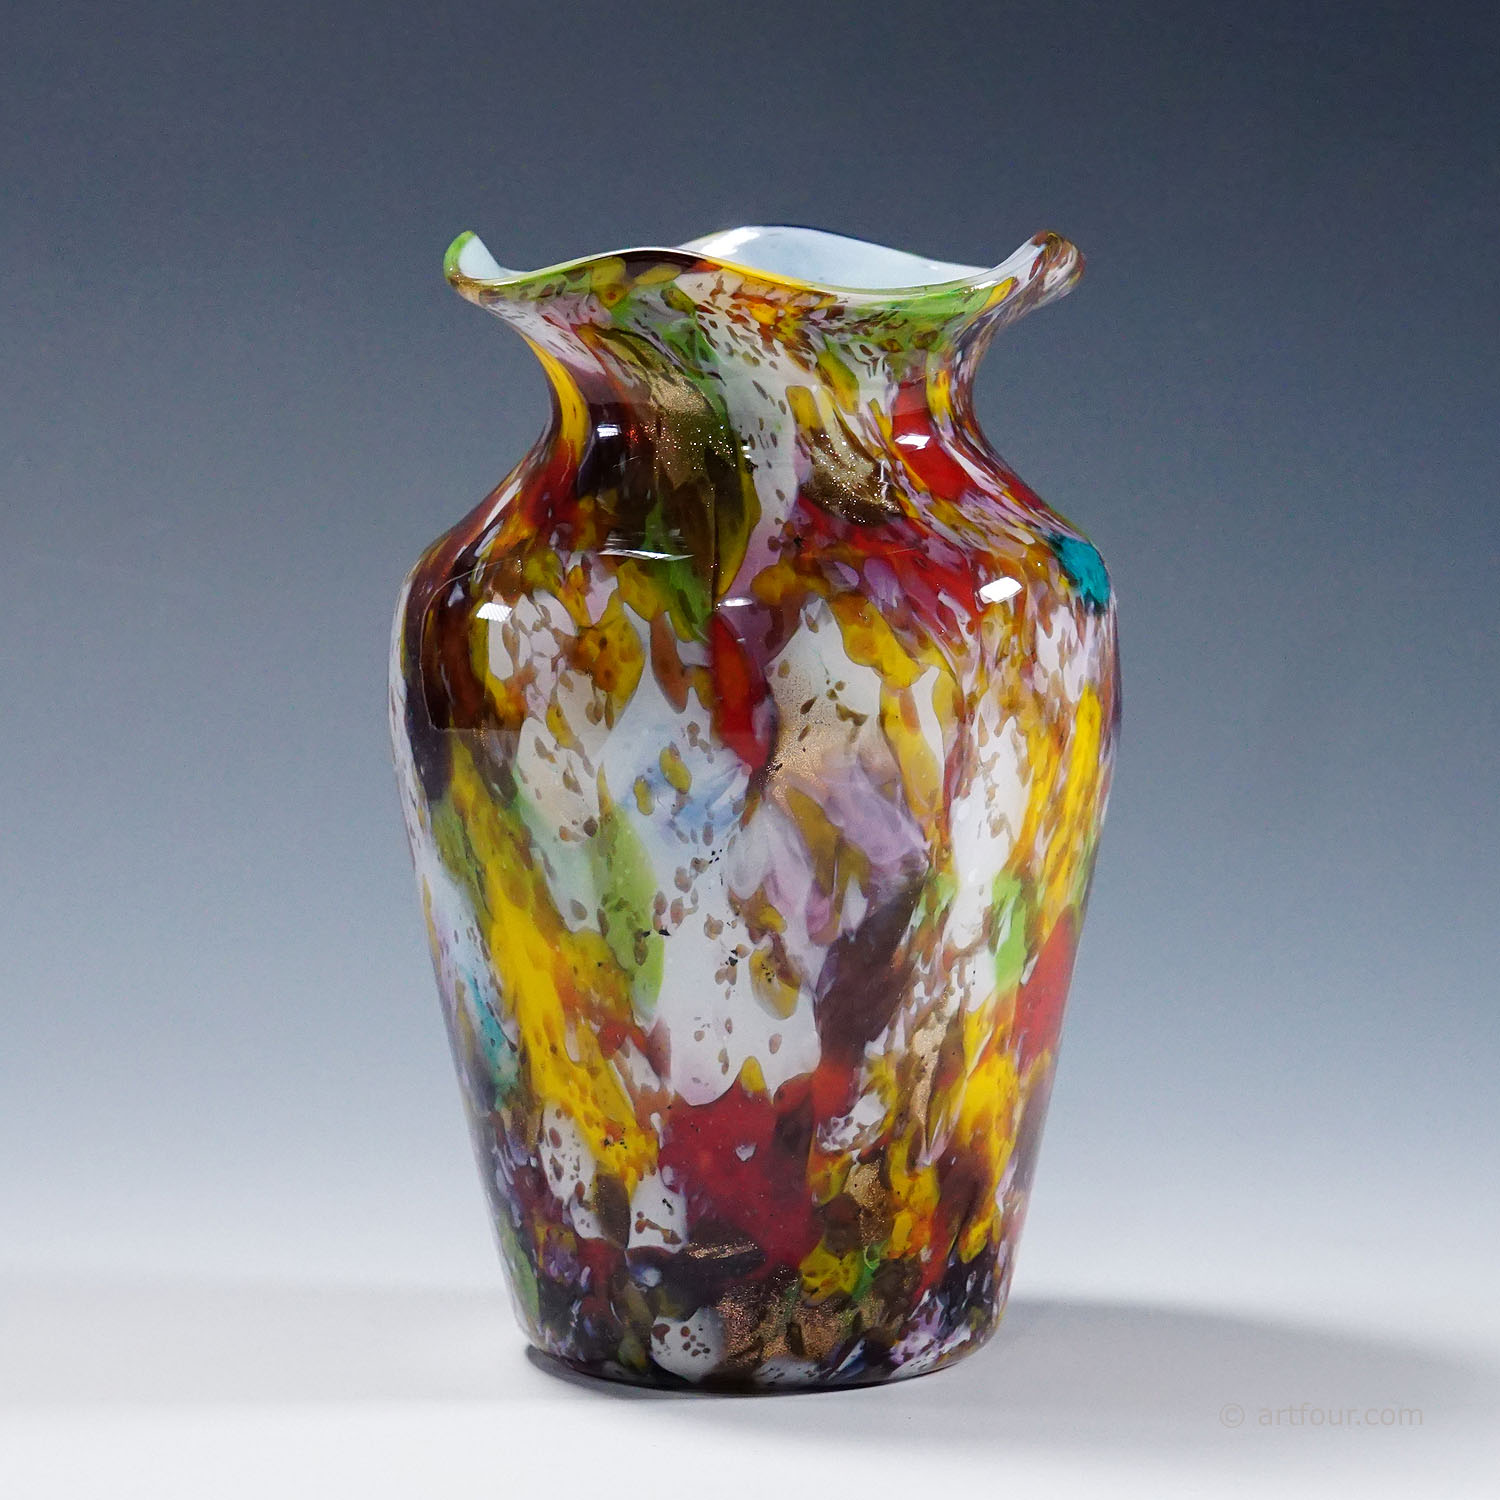 A Macchie Art Glass Vase by Artisti Barovier Attribution, Murano ca. 1920s